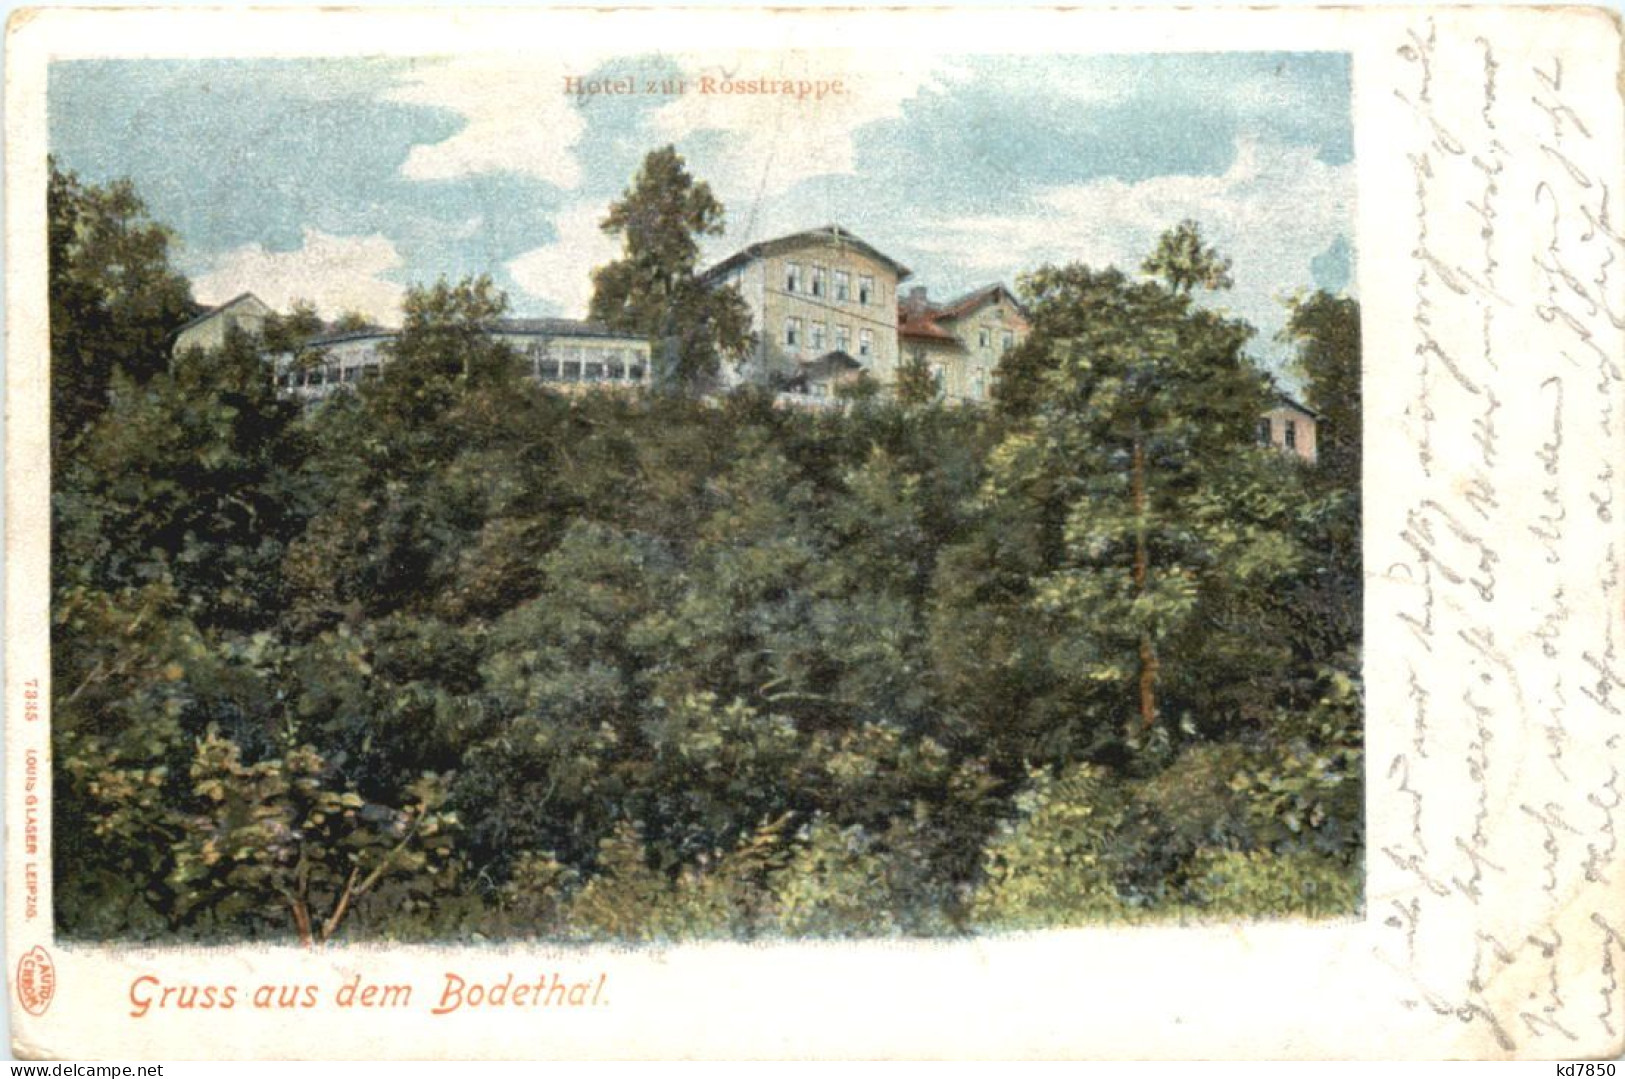 Hotel Zur Rosstrappe - Thale